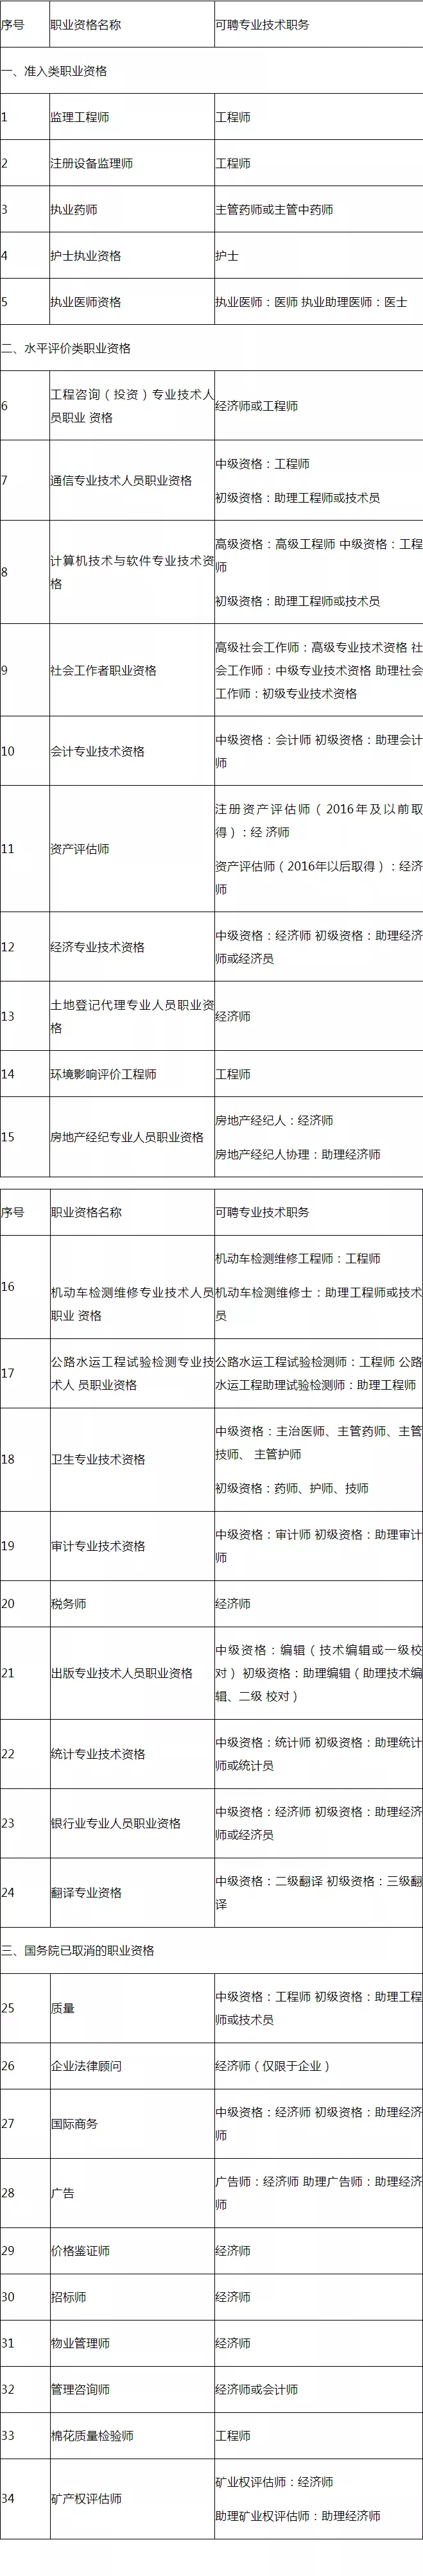 湖北省第二批专业技术类职业资格与职称对应关系表